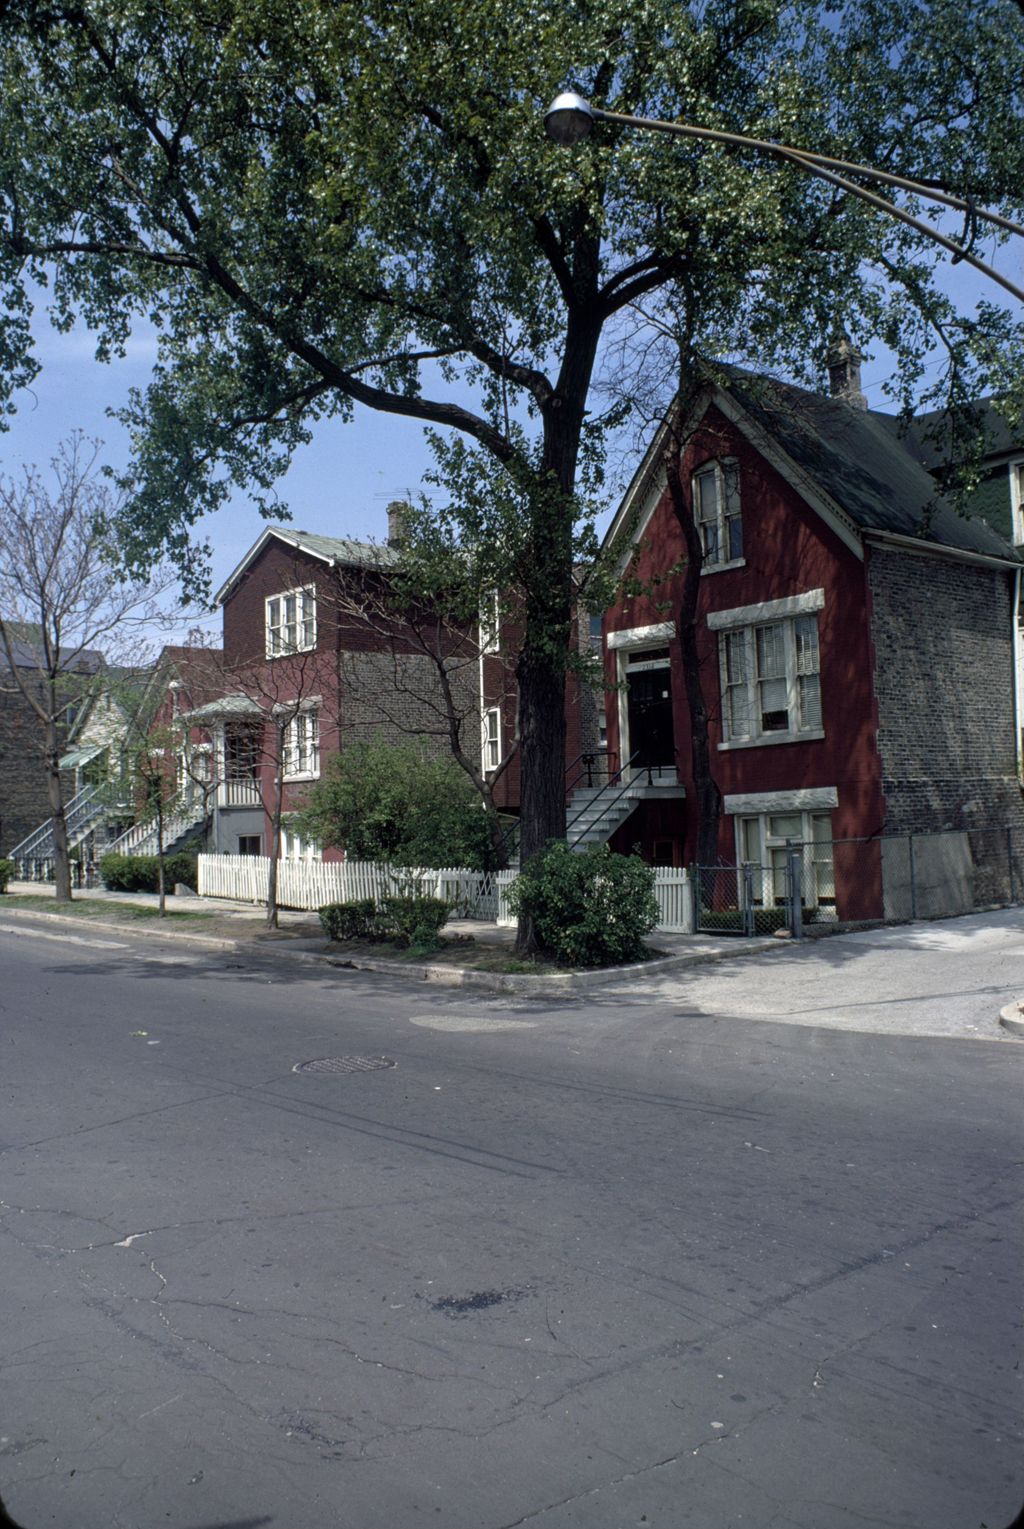 Belden Avenue houses